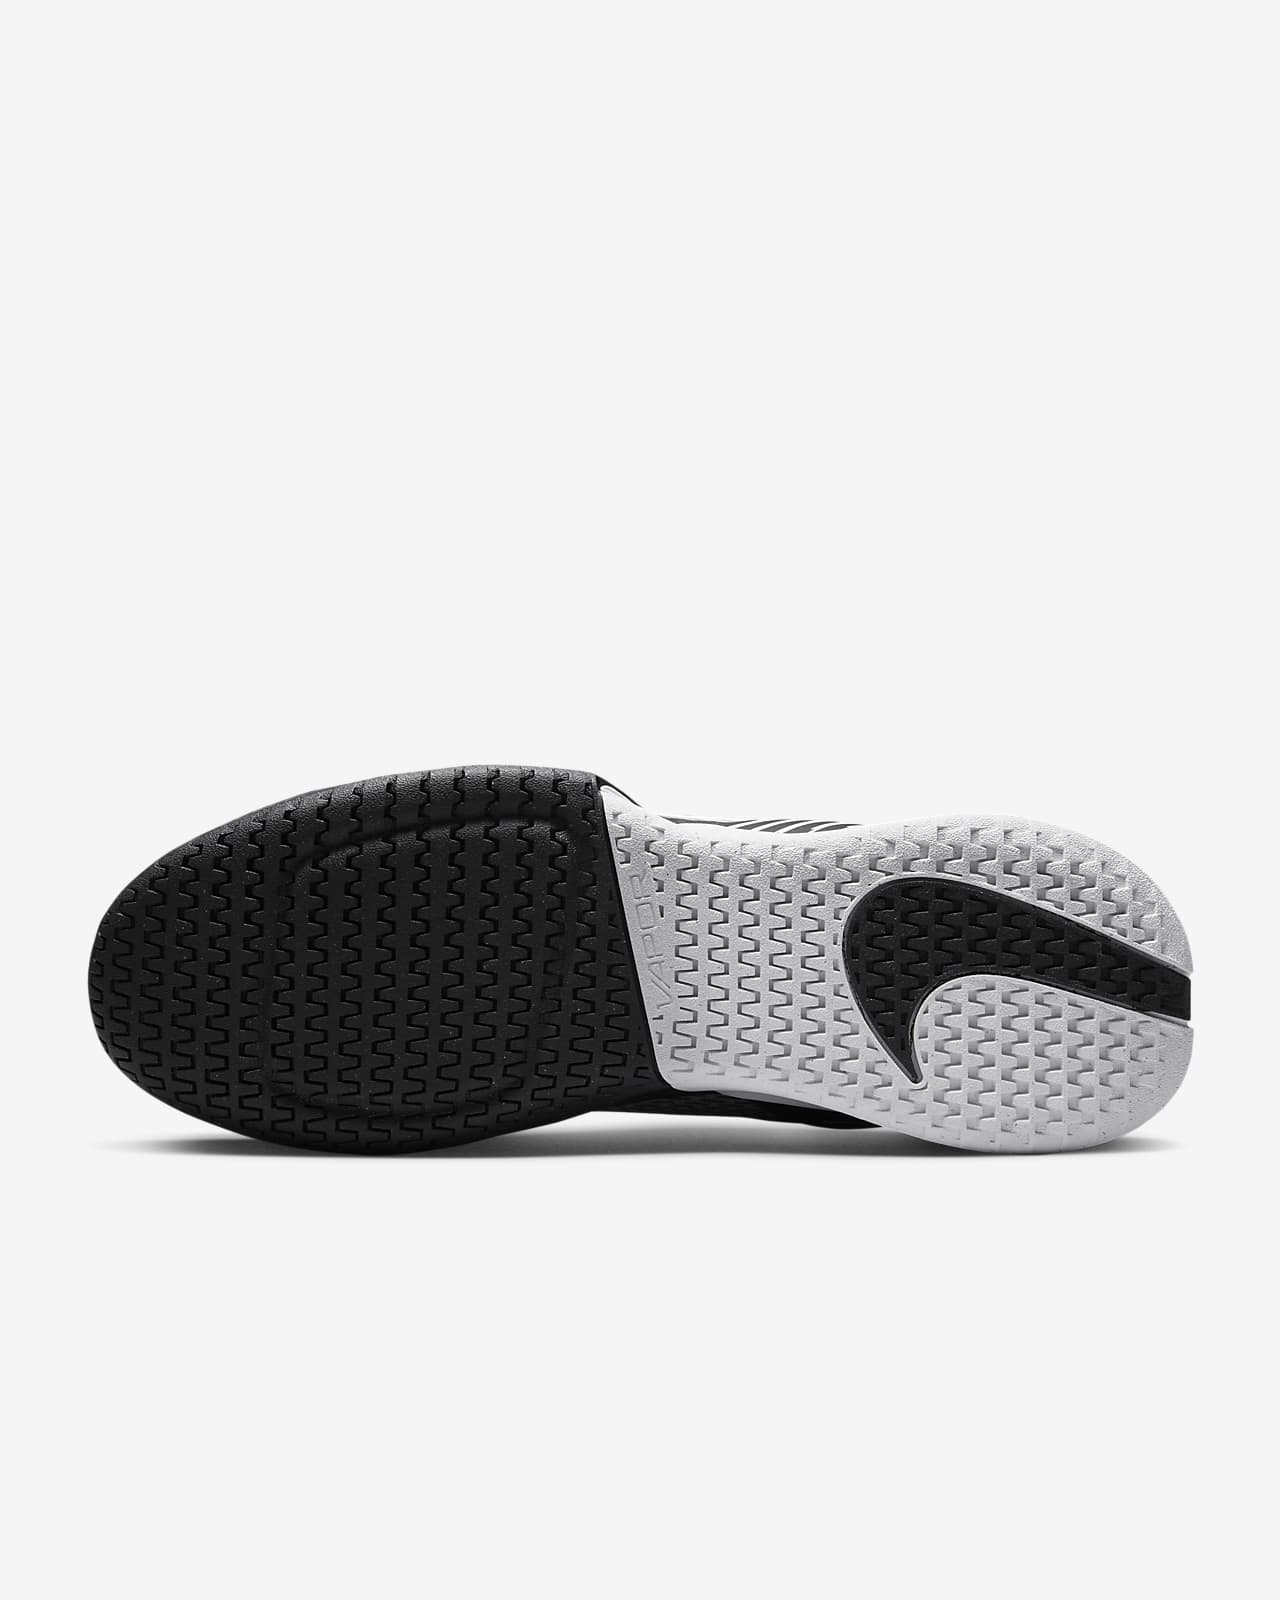 NikeCourt Air Zoom Vapor Pro 2 Men s Hard Court Tennis Shoes Nike com